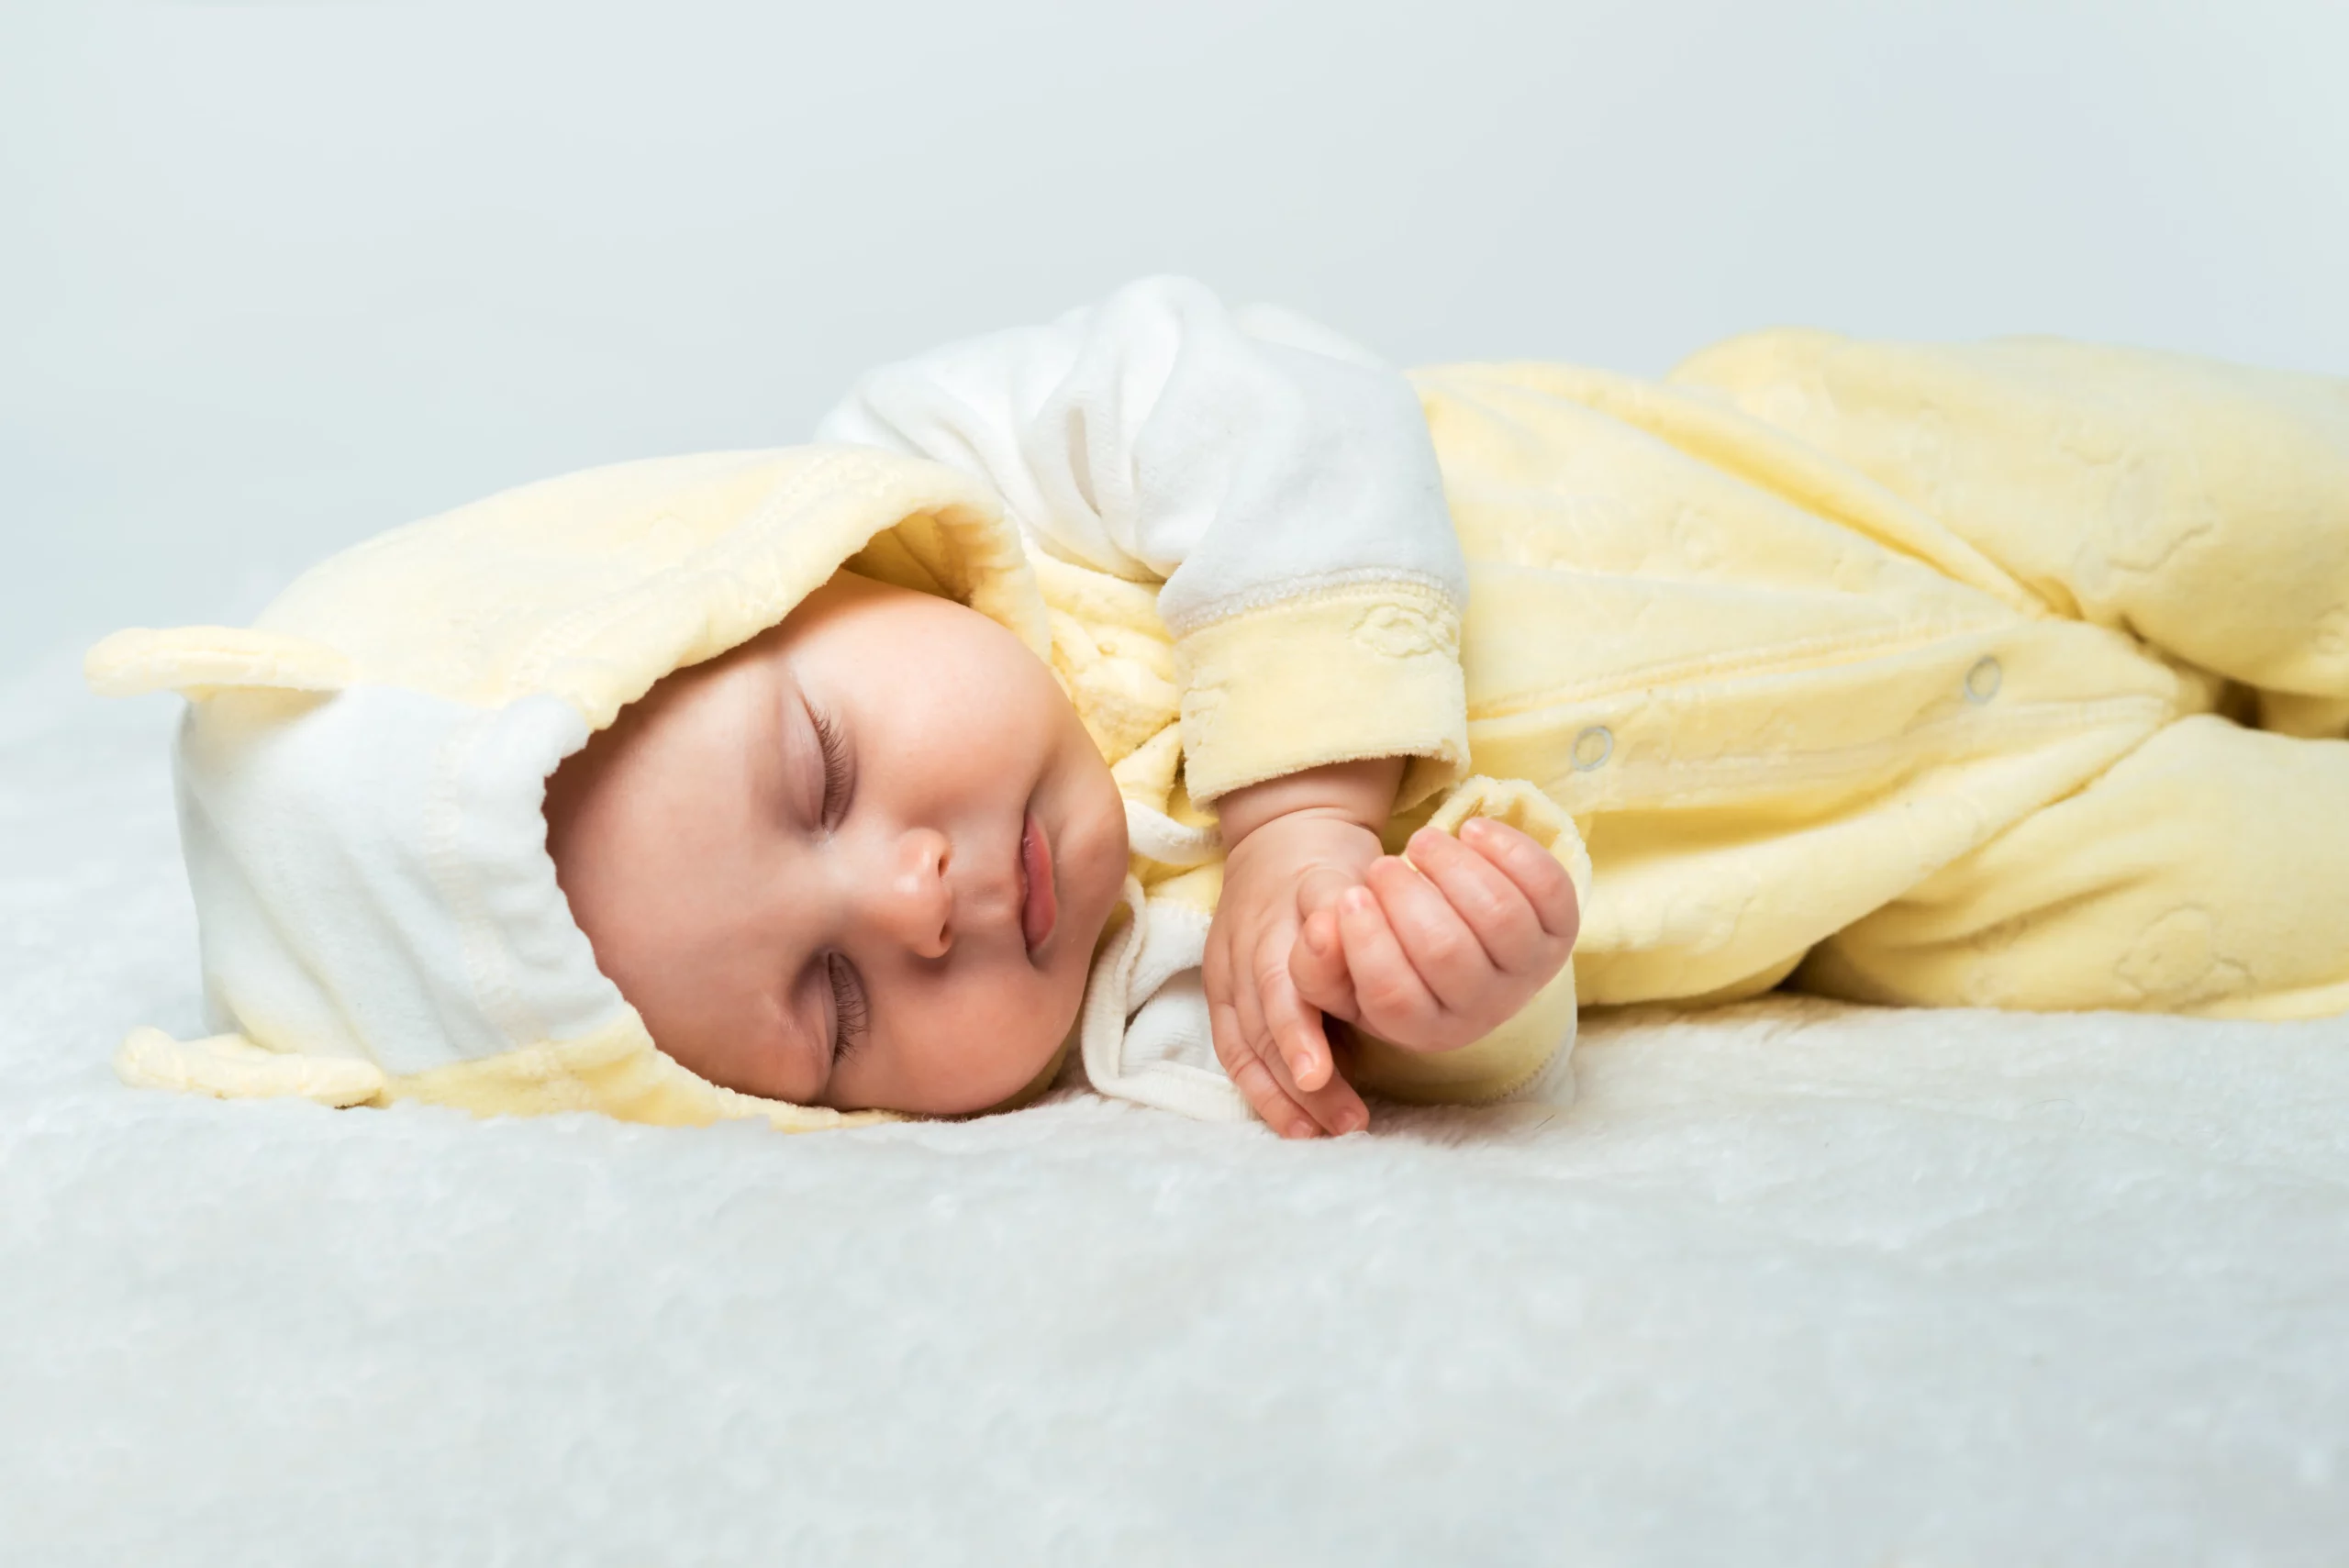 Offrez à votre bébé un sommeil paisible et sain avec notre matelas bio, garantissant un couchage sûr et naturel.